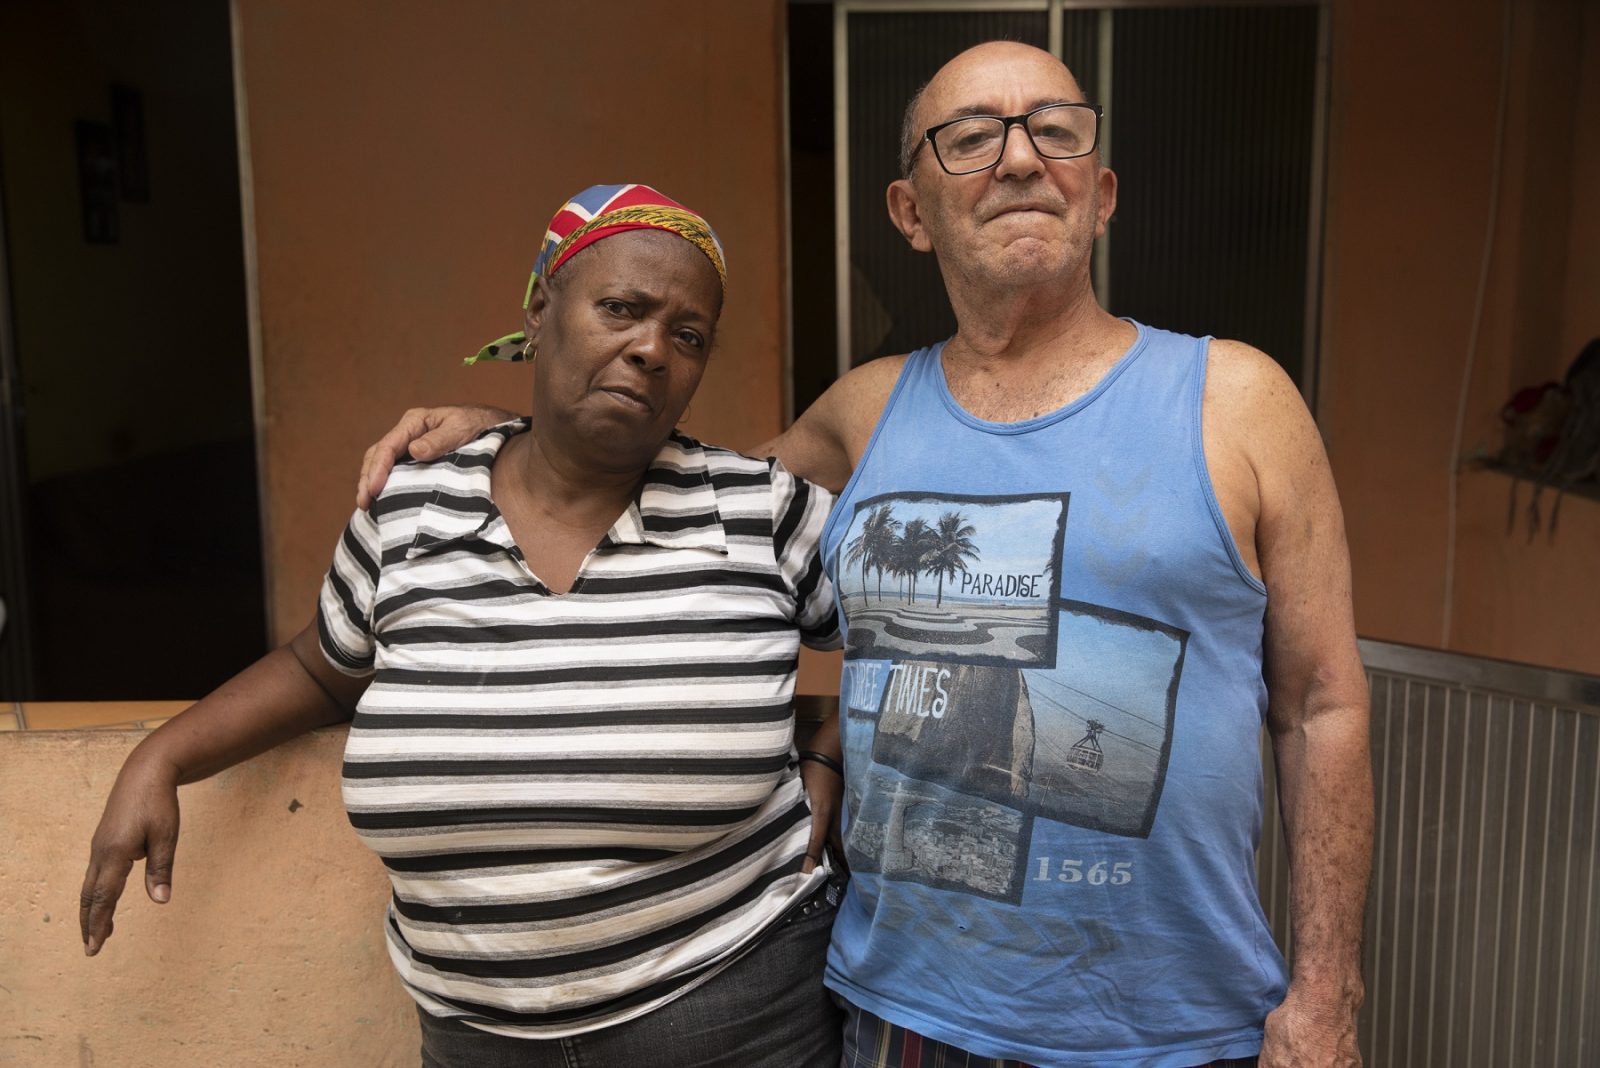 Vera Lúcia e José Luiz, avós de Diego, jovem morto pelo exército em 2018. À esquerda, Vera Lúcia, uma mulher negra na faixa dos 60 anos. Ela veste uma camiseta branca com listras cinzas e pretas, além de uma bandana estampada na cabeça. À direita está José, um homem branco de regata azul estampada com cartões postais do Rio de Janeiro. Os dois estão abraçados na entrada de casa.